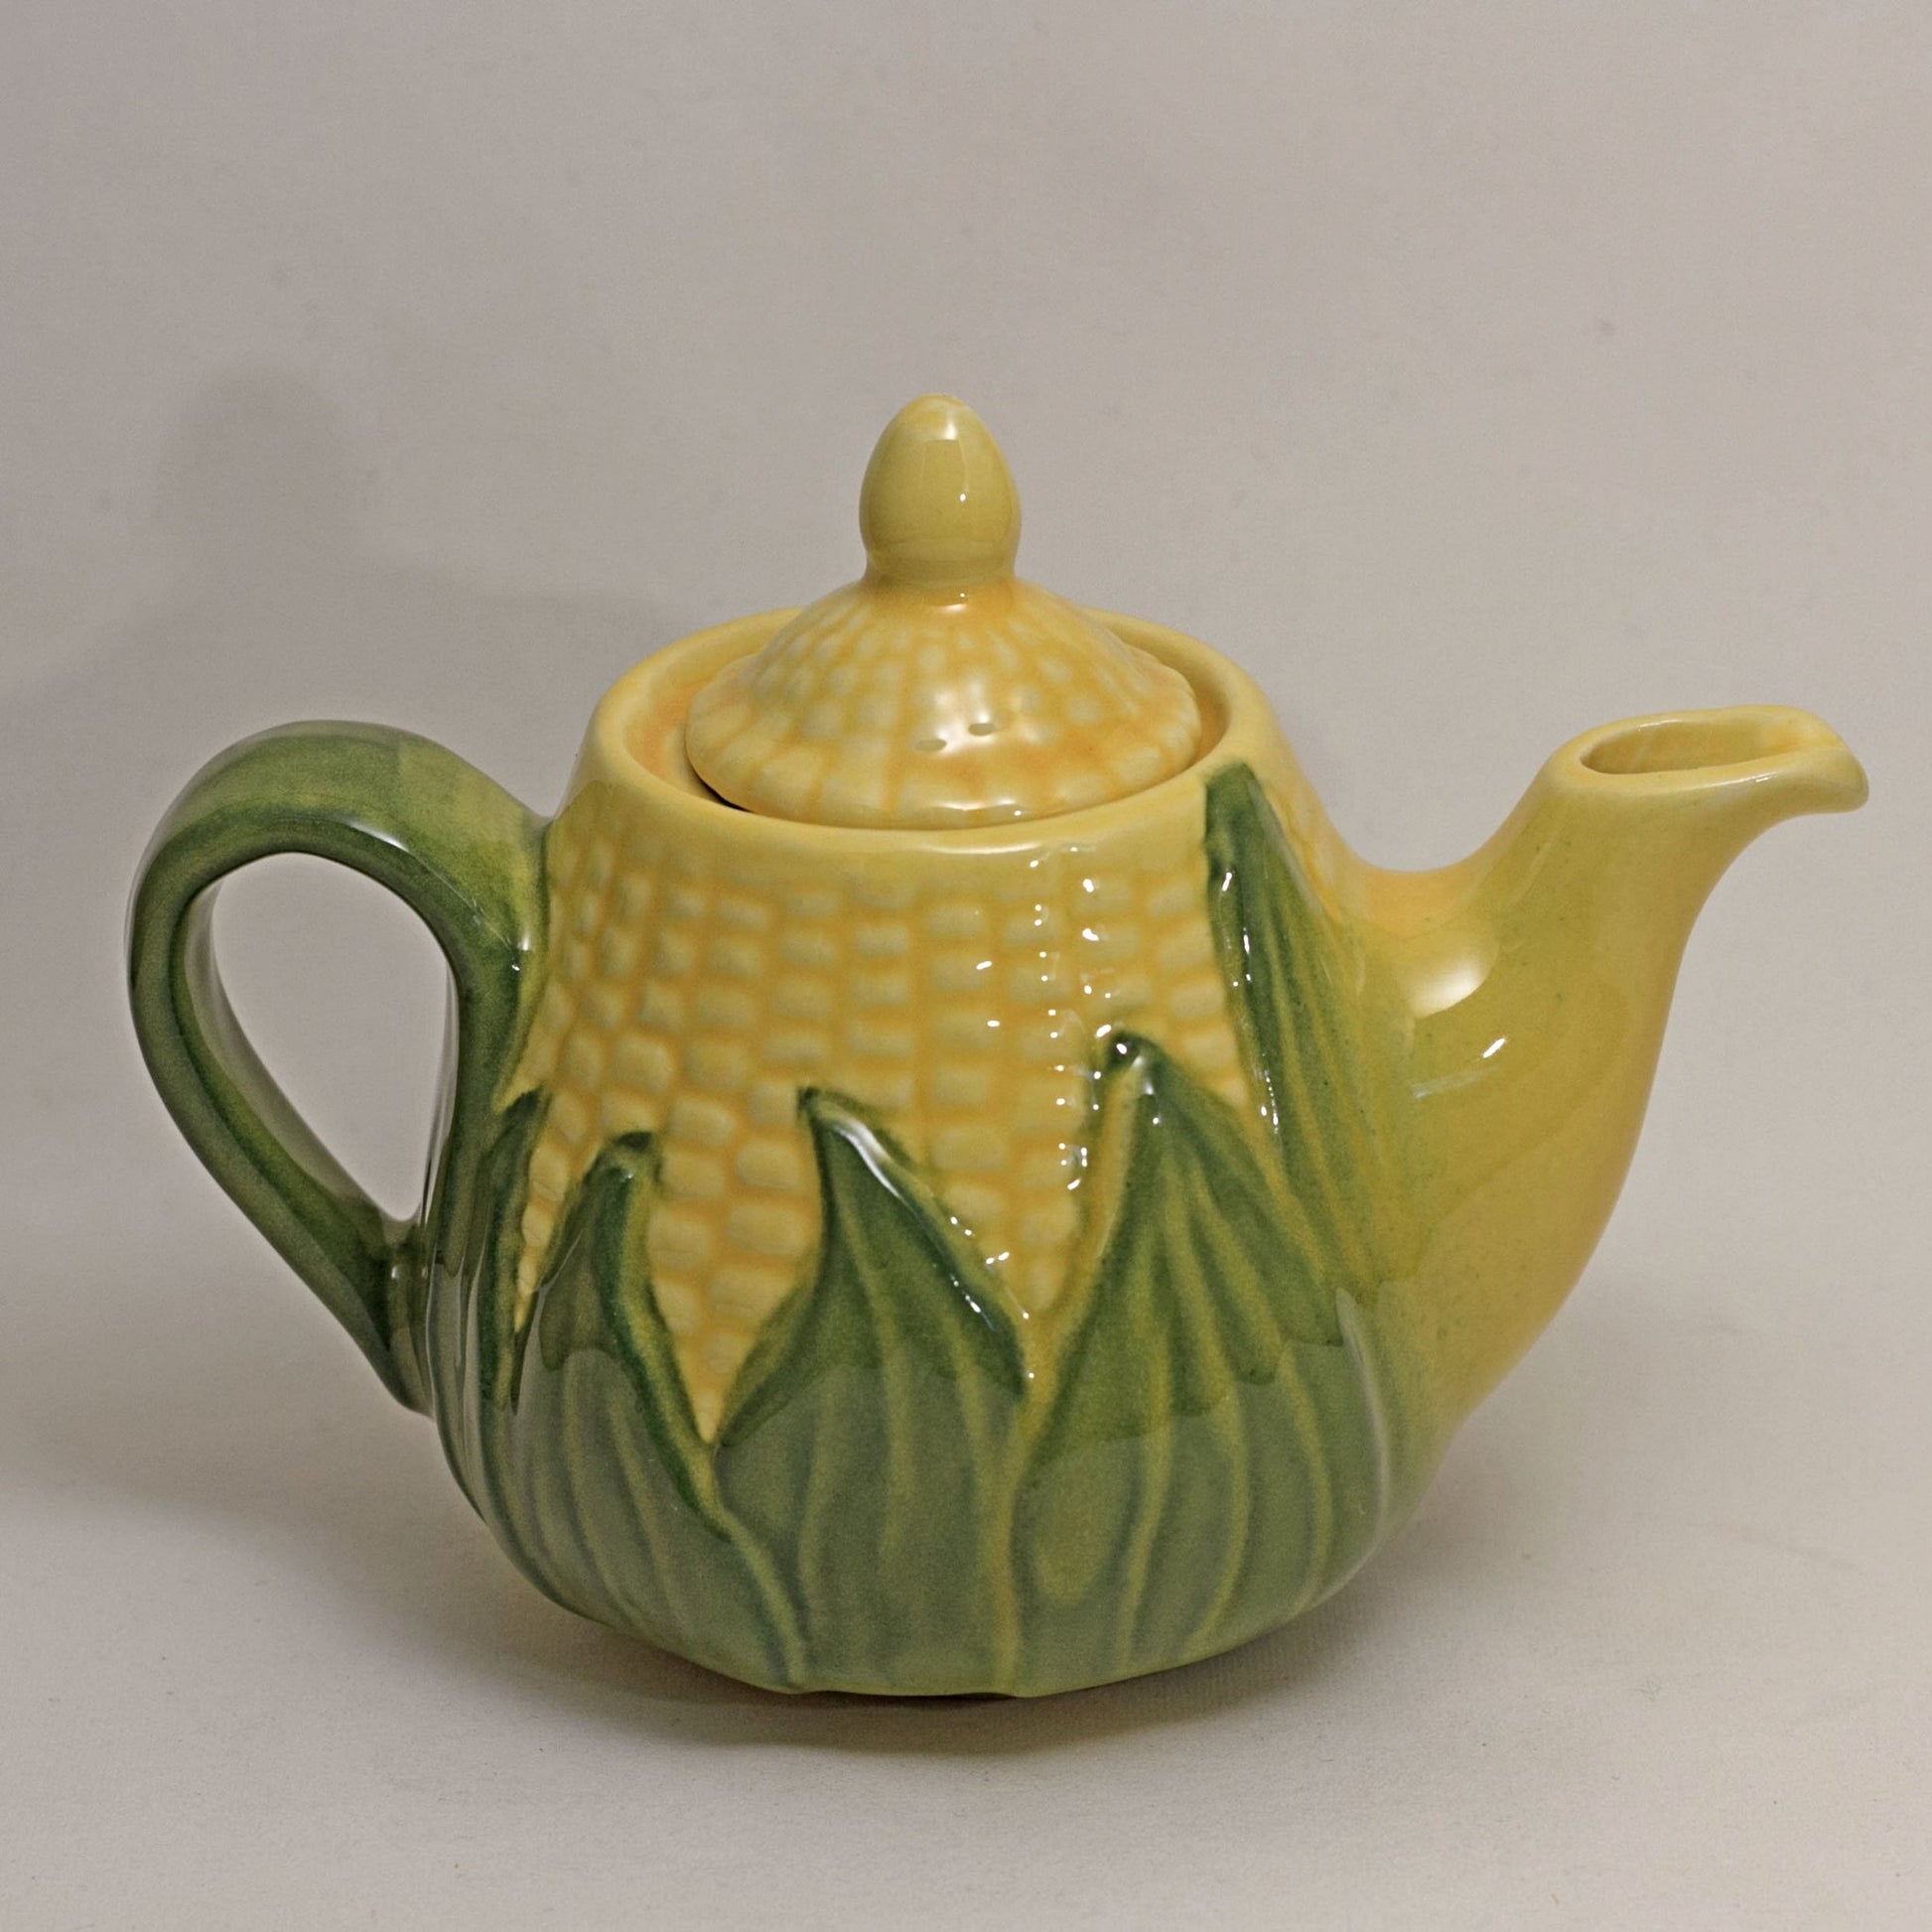 SHAWNEE Pottery CORN KING Small Teapot Mini